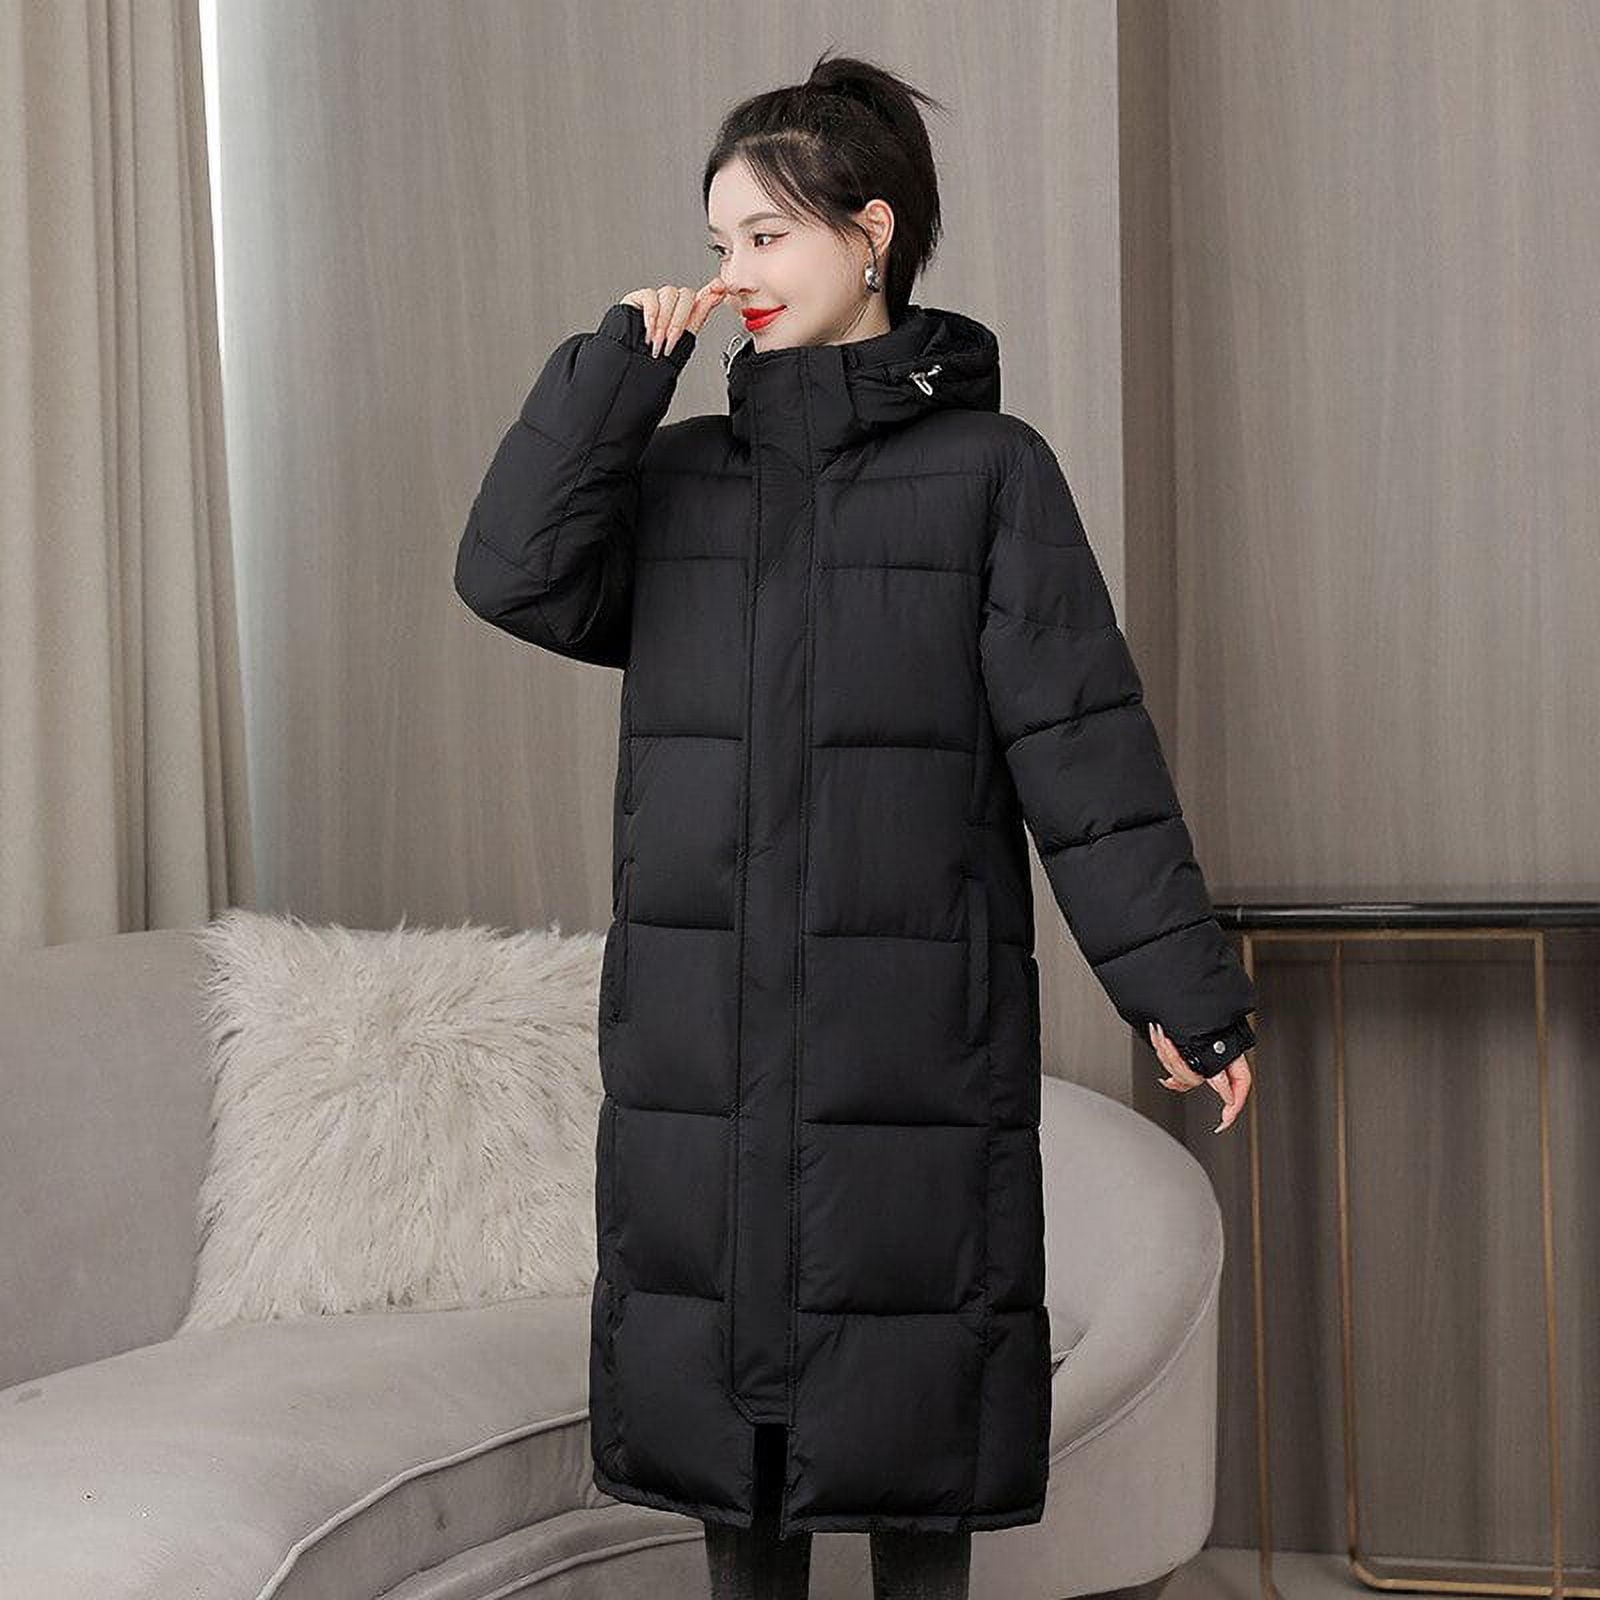 DanceeMangoo Winter Coat Women Fashion Korean Long Jacket Women Clothing  New Female Warm Hooded Parkas Ropa De Invierno Mujer Zm2540 